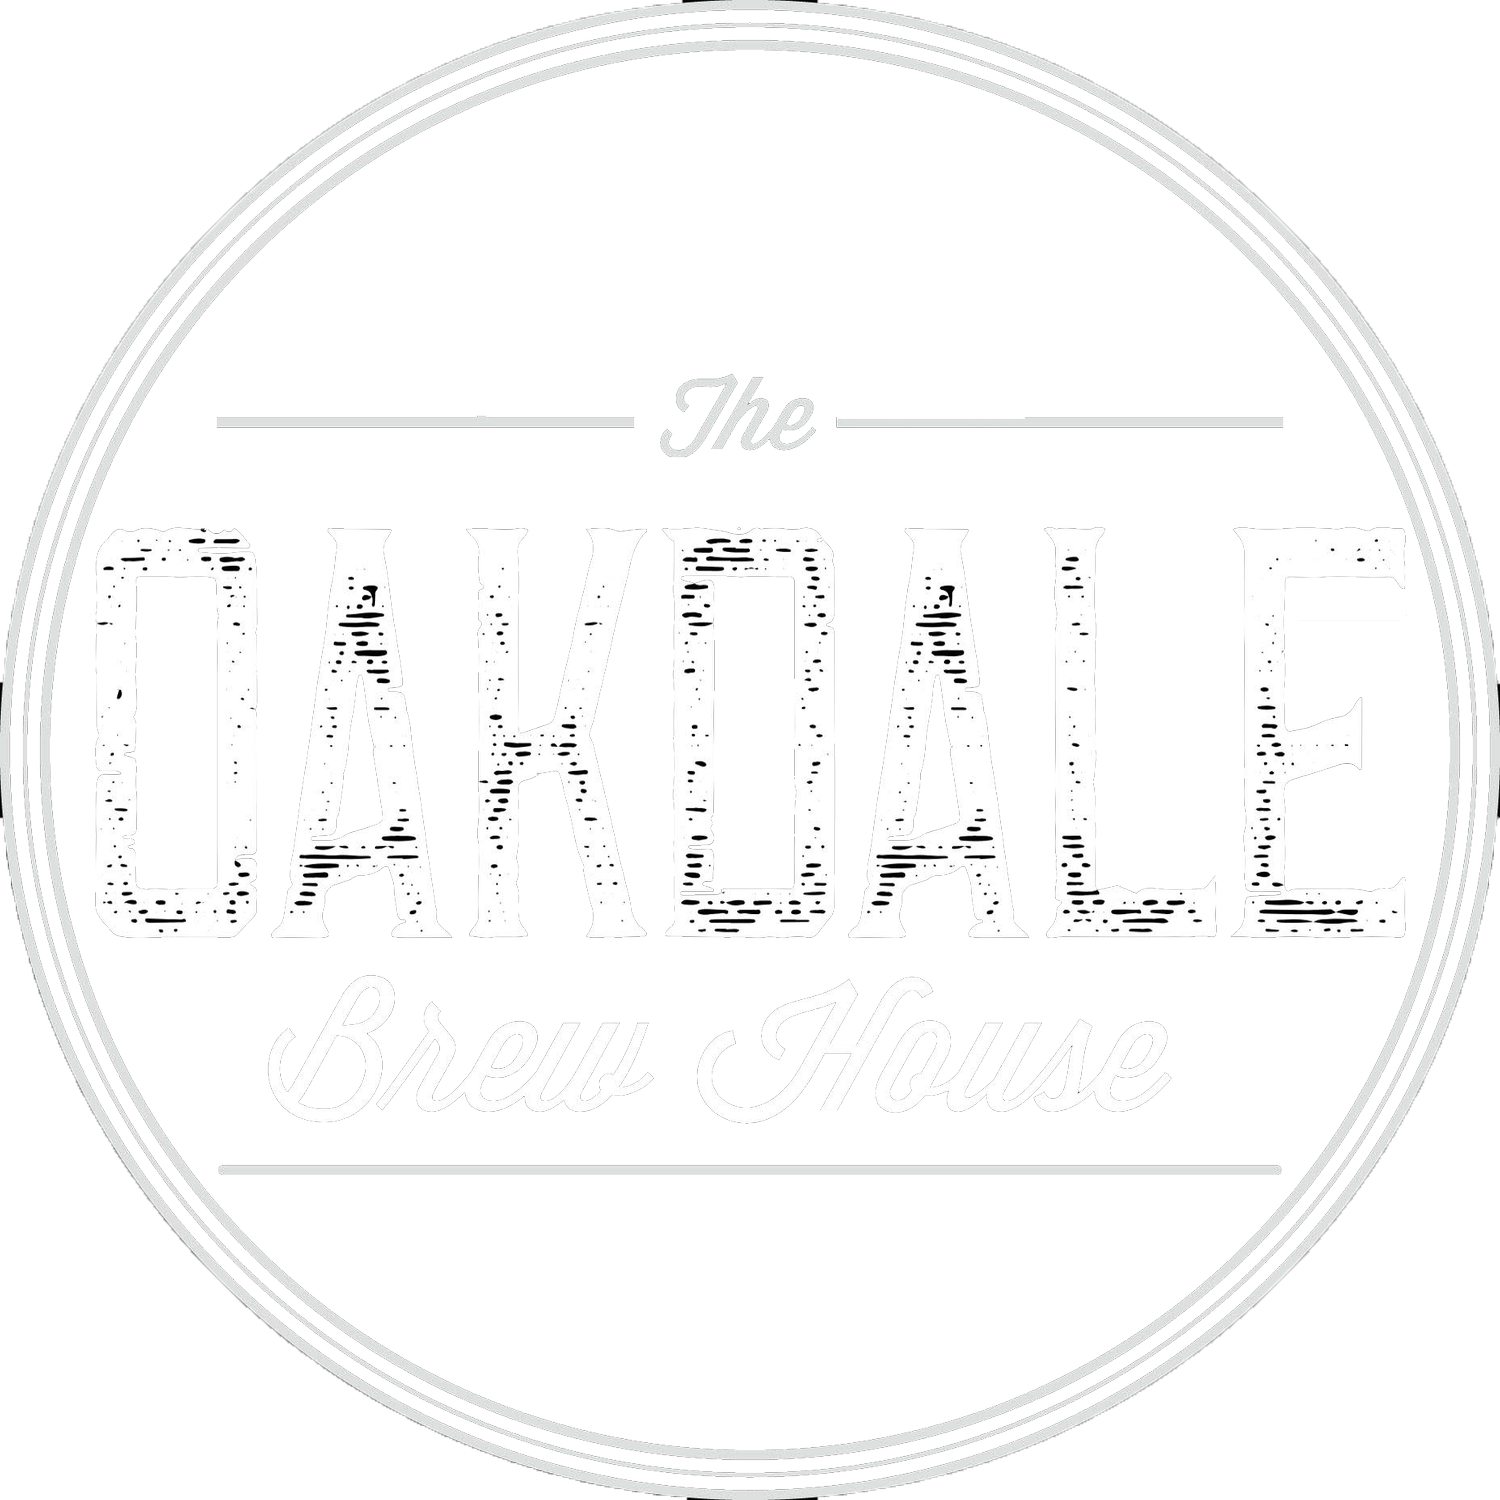 Oakdale Brew House